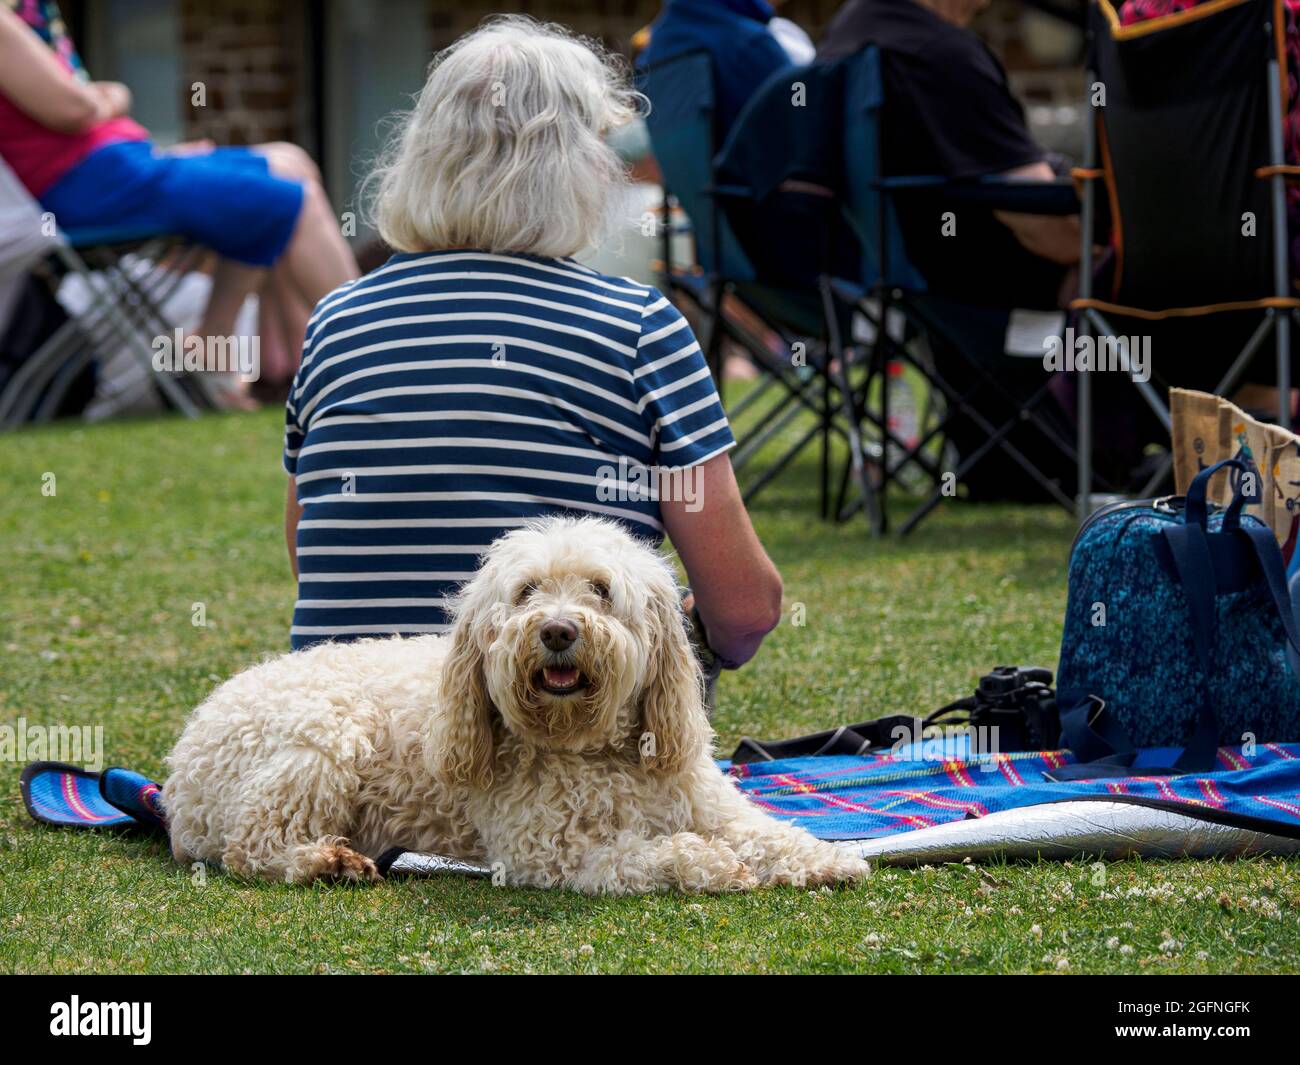 Gut erzogener Hund, der auf einer Picknickdecke neben dem Besitzer liegt, der während eines Festivals eine Band spielt, Bude, Cornwall, Großbritannien Stockfoto